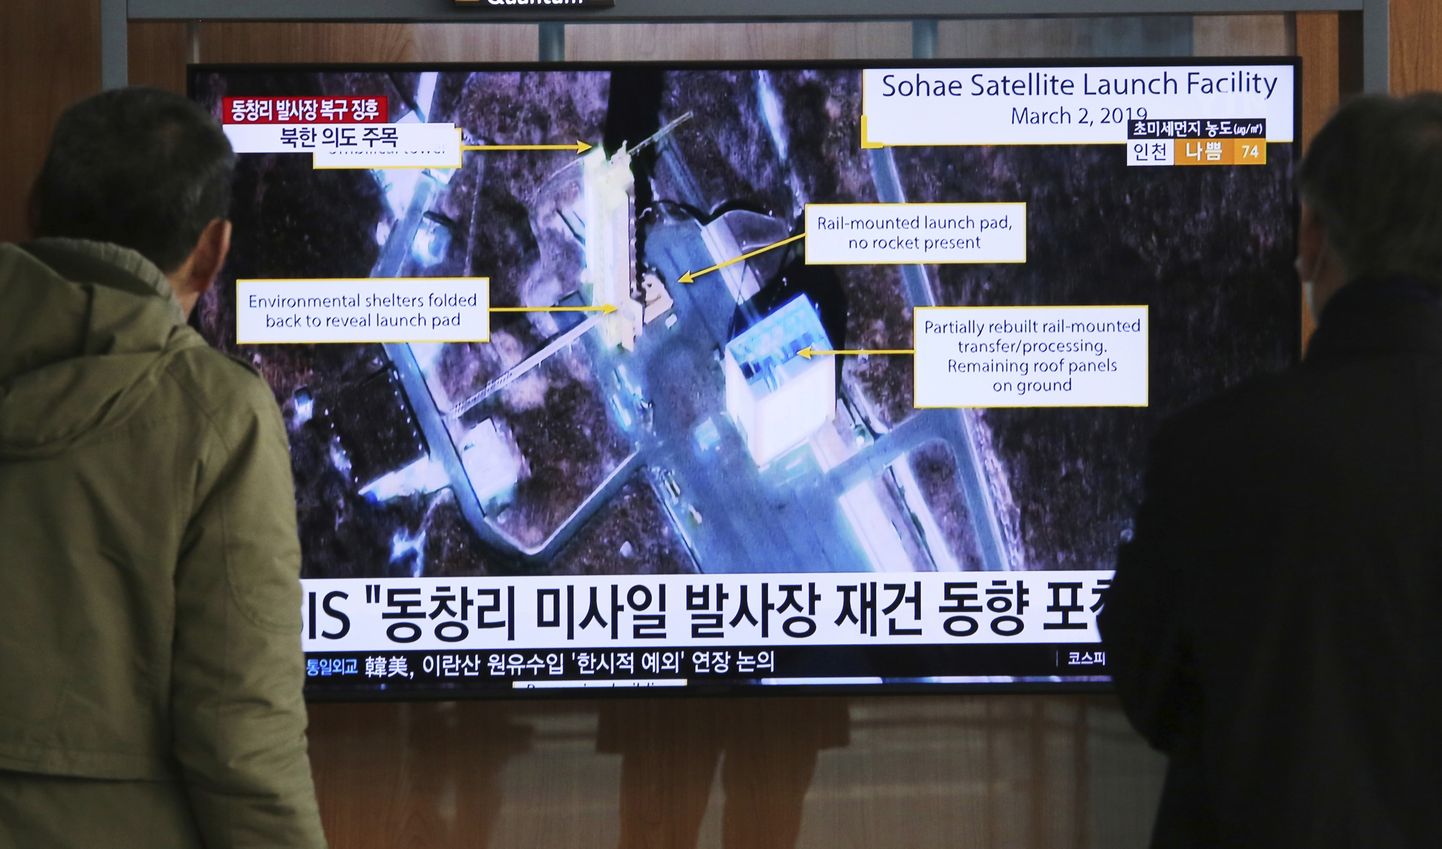 Põhja-Korea viis Sohae satelliitide ja kaugmaarakettide stardikompleksis läbi järjekordse «otsustava katsetuse», teatas riigimeedia laupäeval. Mehed Souli raudteejama teleekraanilt uudist jälgimas.